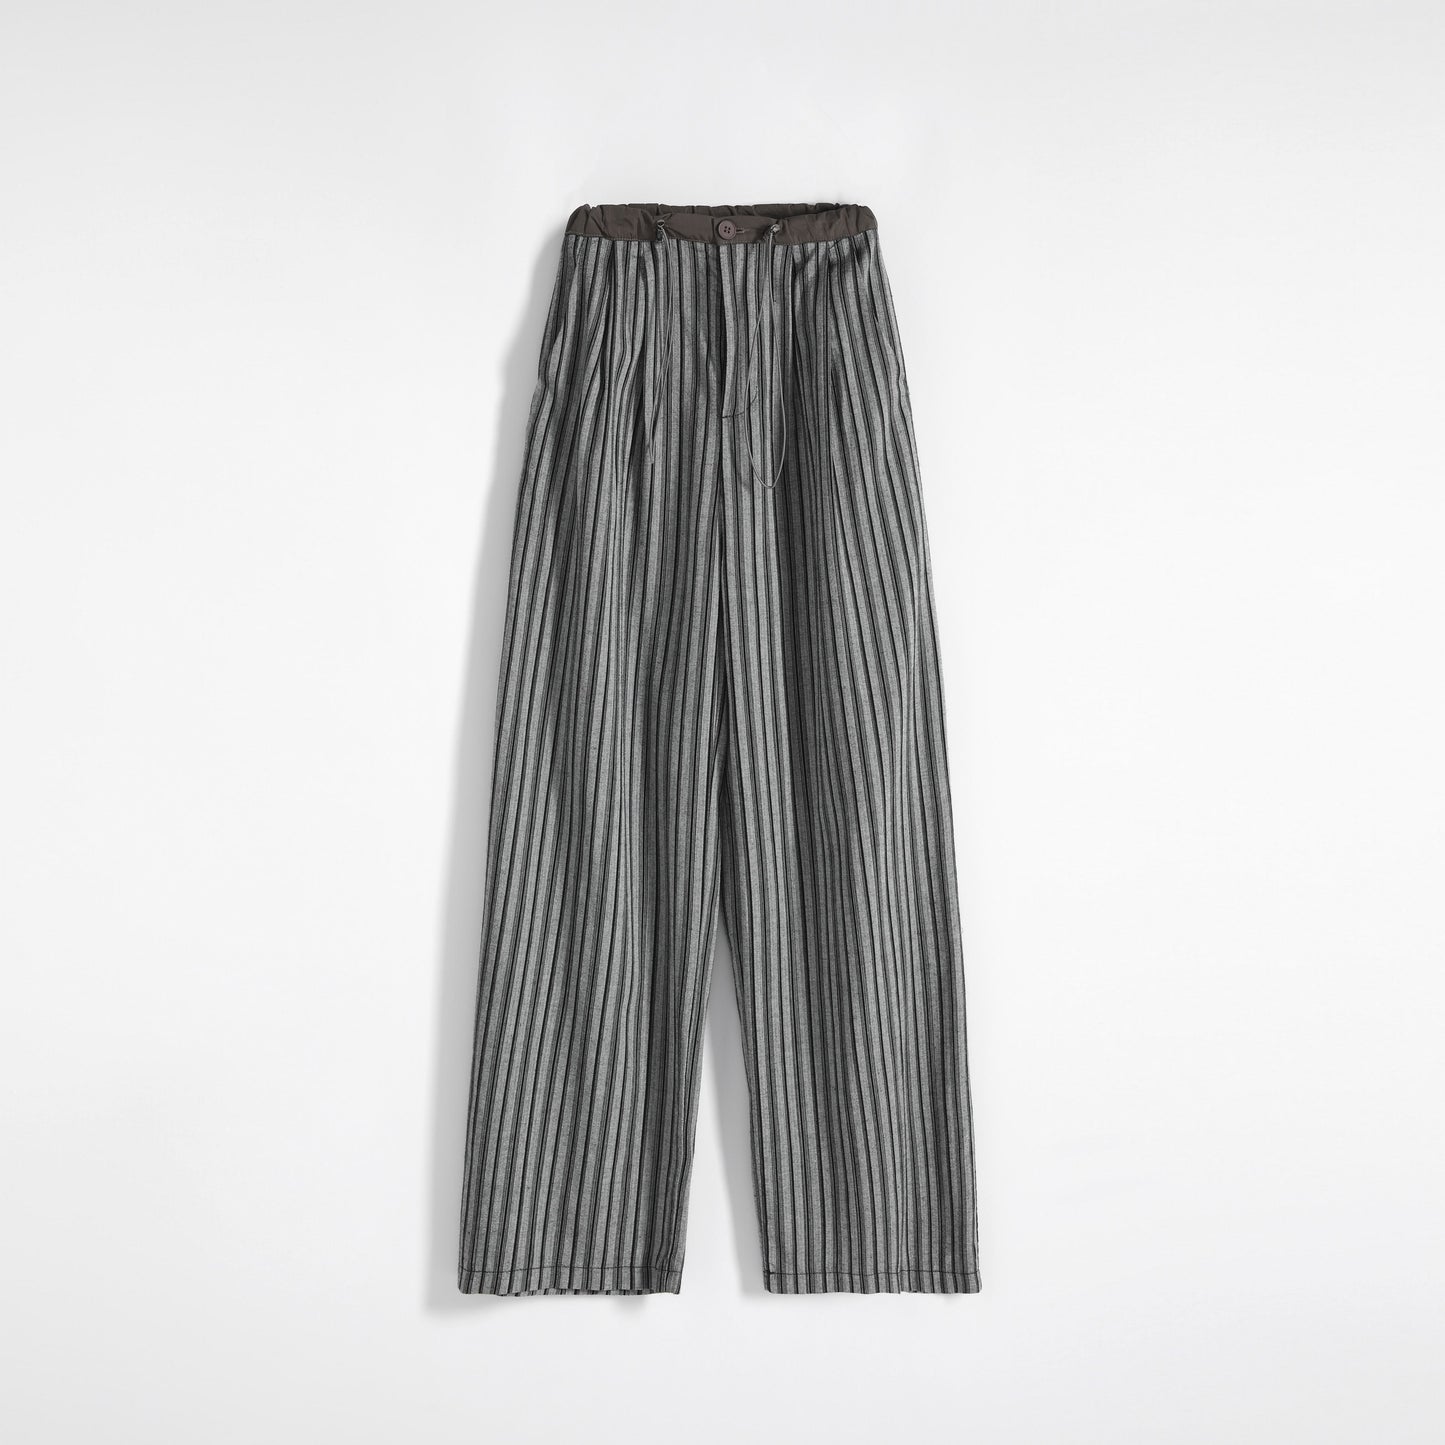 Pantalones de rayas rectos, anchos de tiro alto y ajustados con cordón